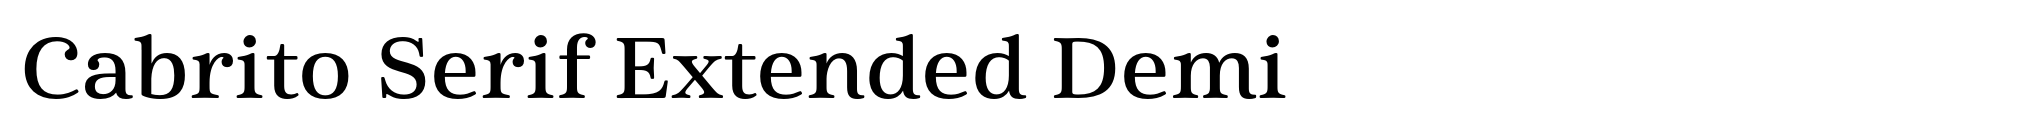 Cabrito Serif Extended Demi image